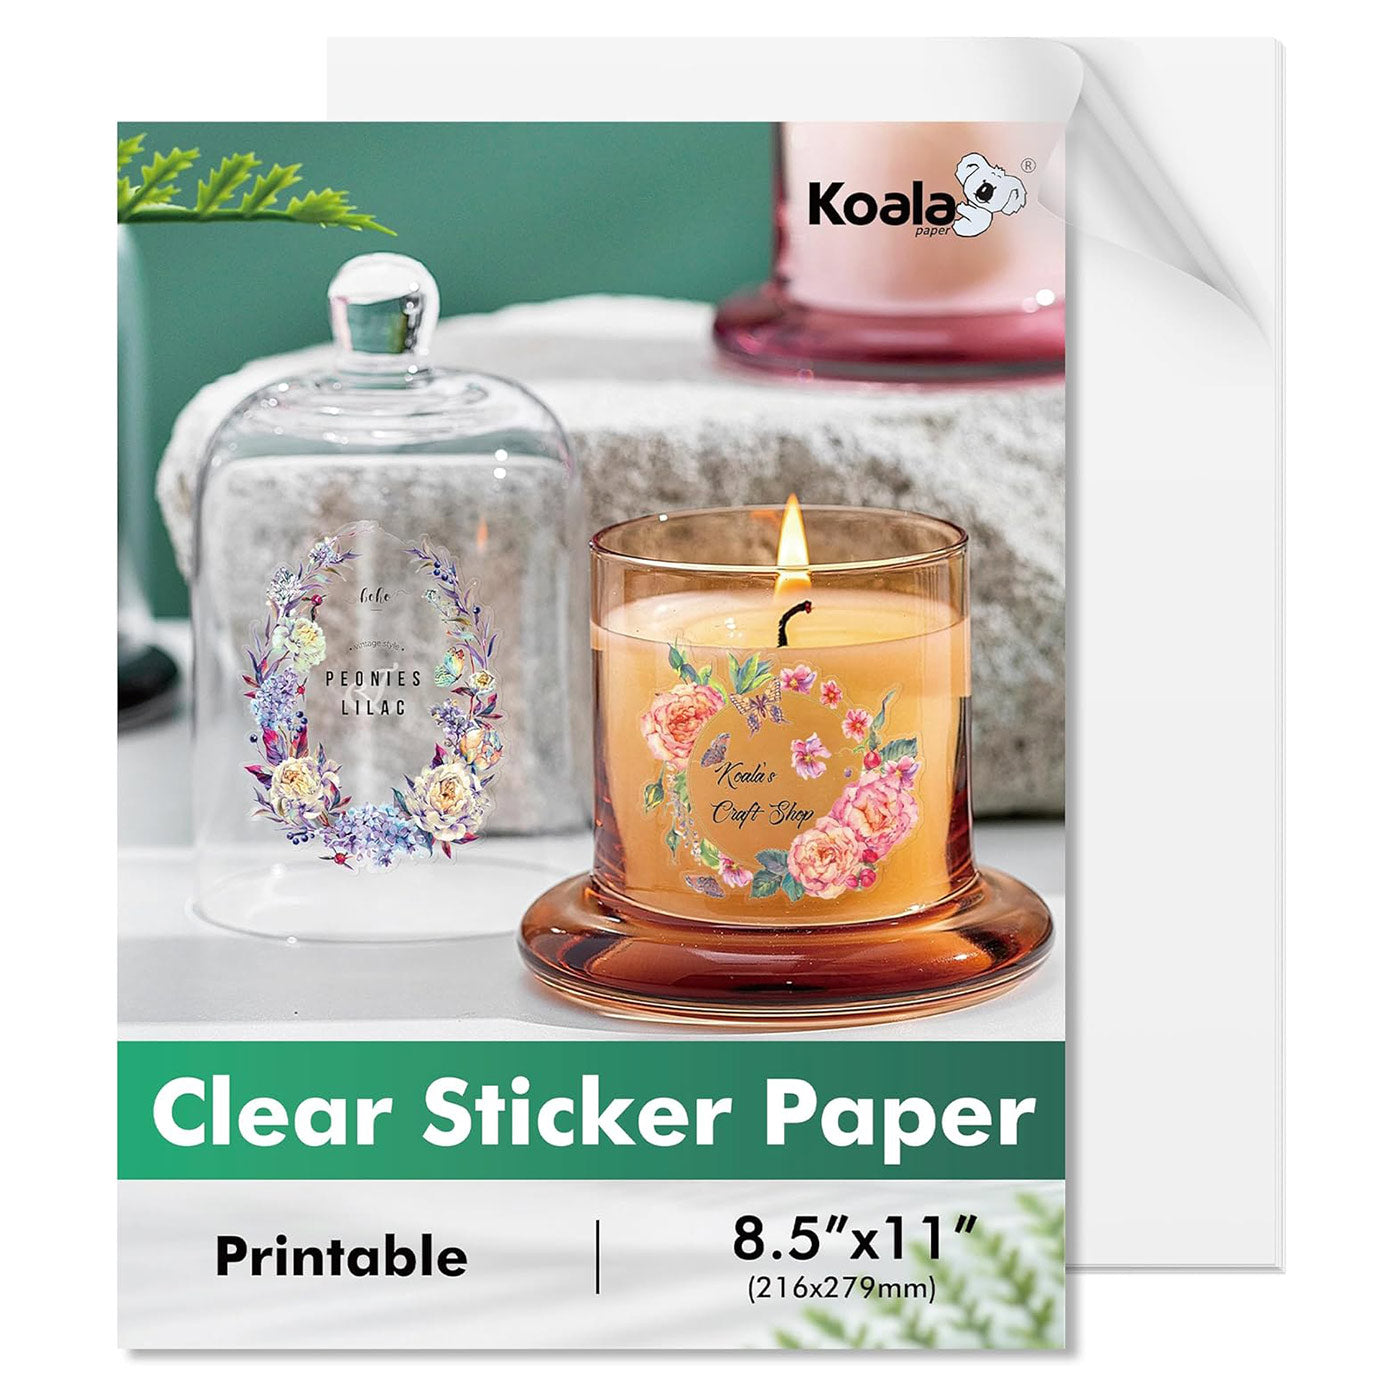 Koala Non-Waterproof Crystal Clear Vinyl Sticker Paper for Inkjet